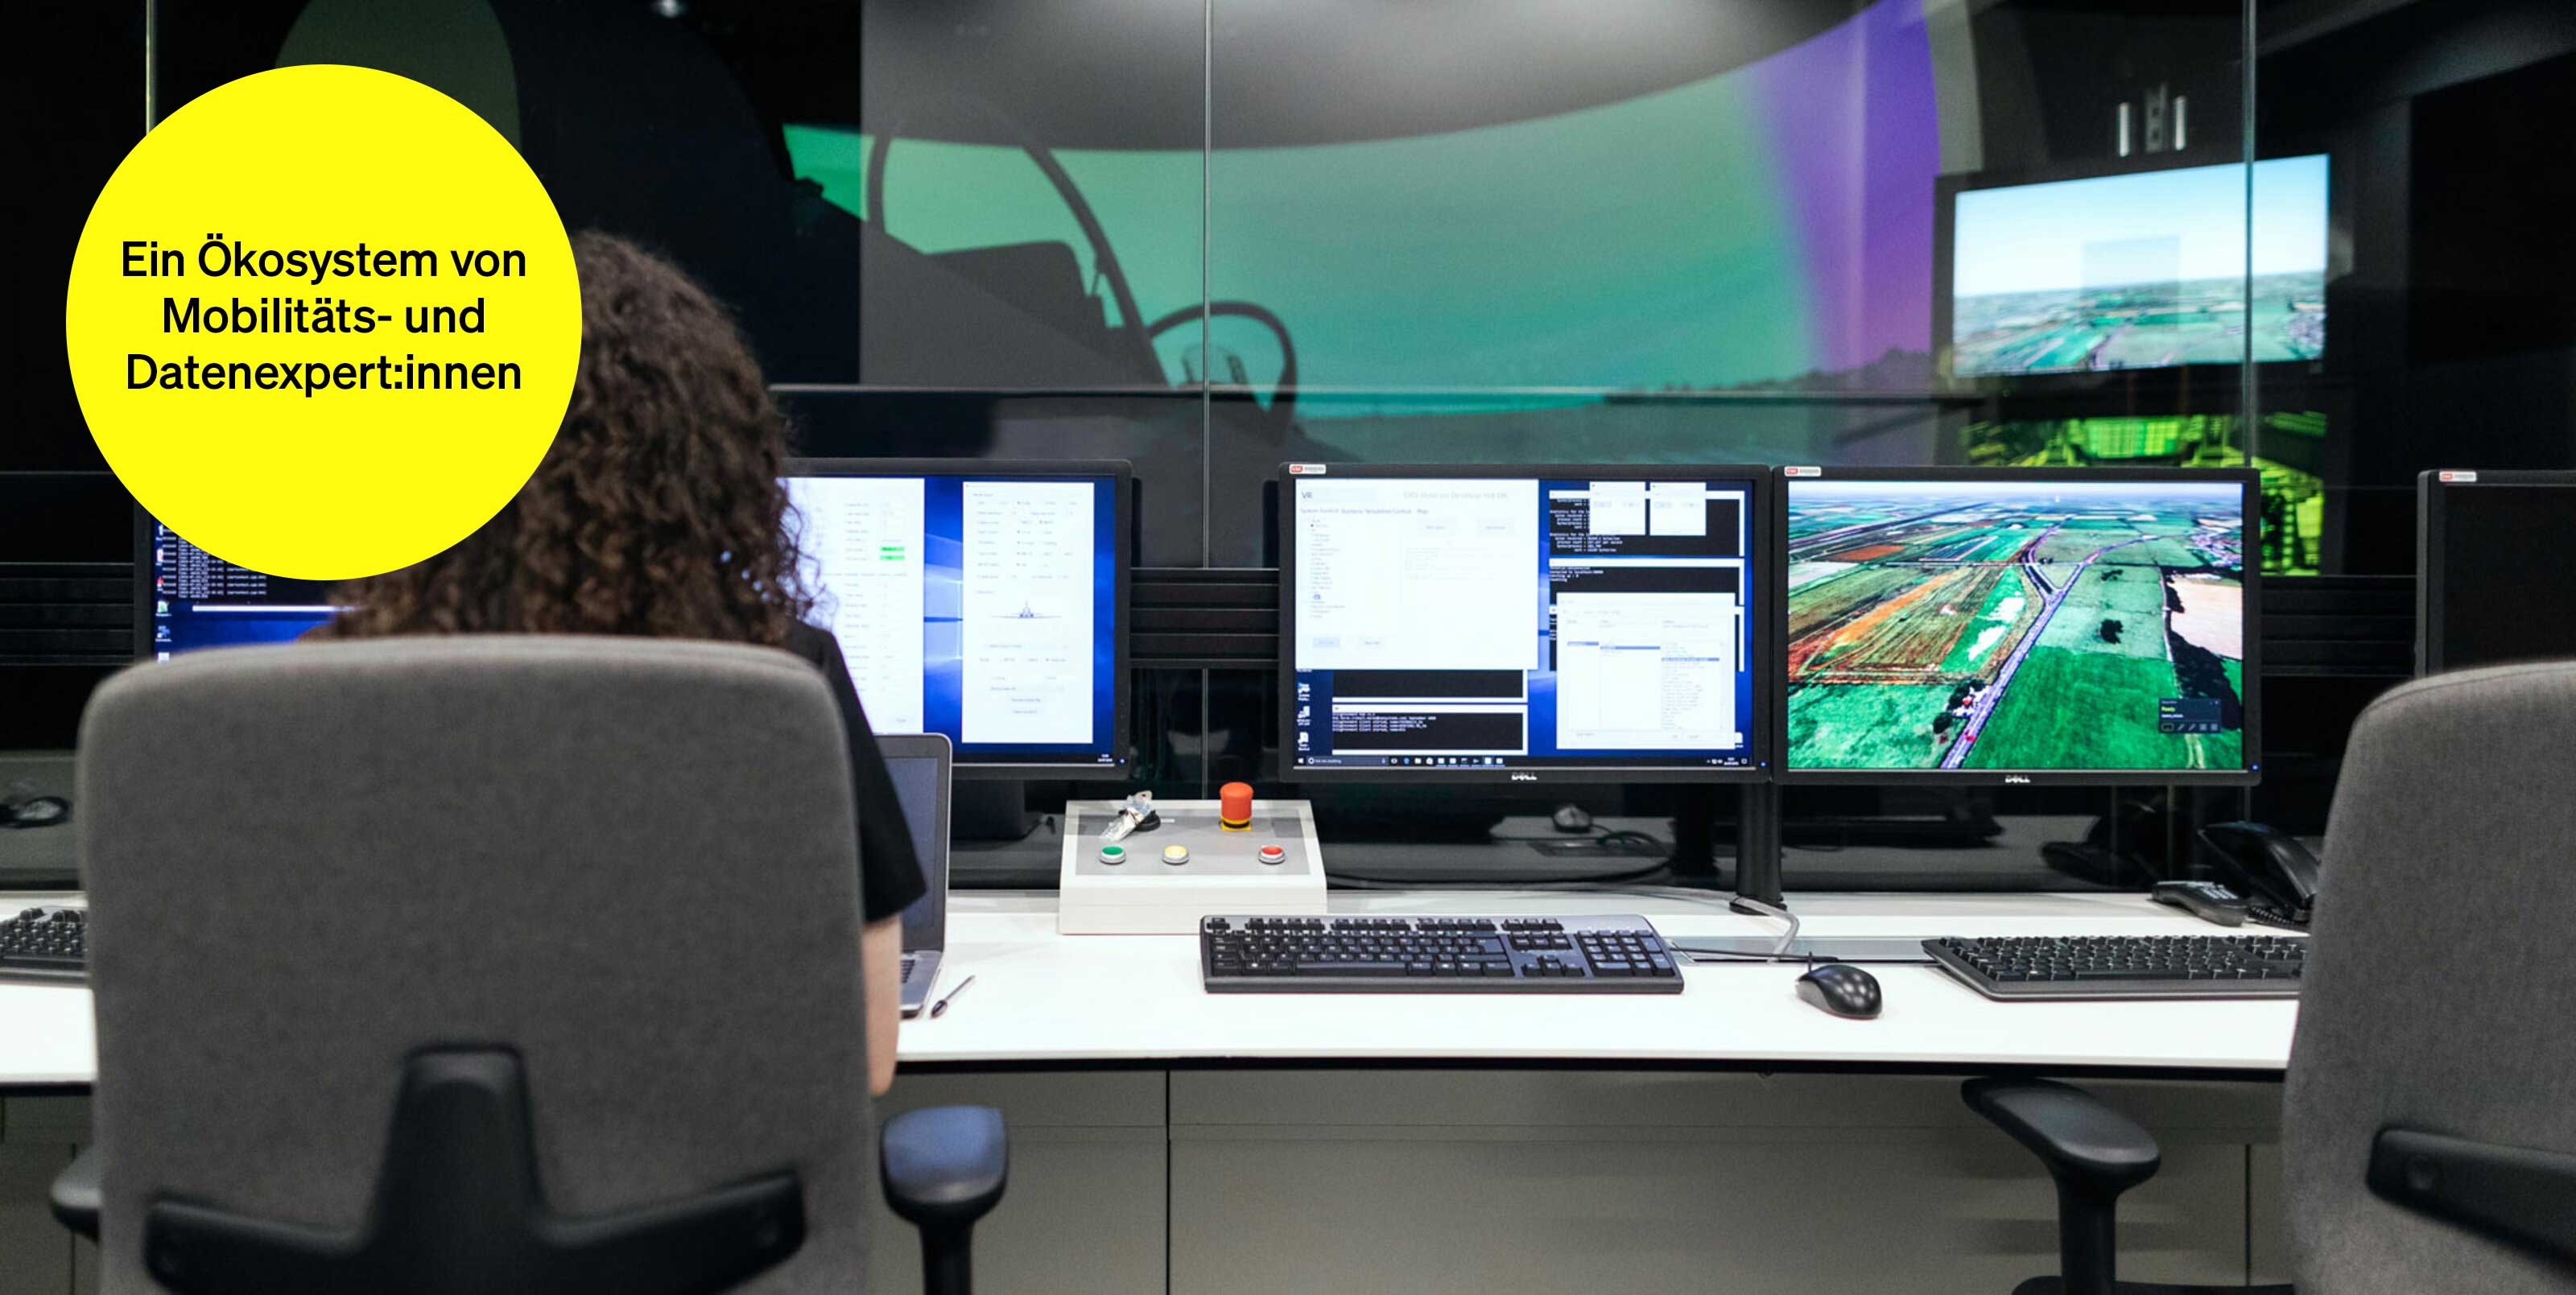 Frau sitzt in Regieraum in einem Videostudio – Textbaustein in runder Kachel: Ein Ökosystem von Mobilitäts- und Datenexpert:innen